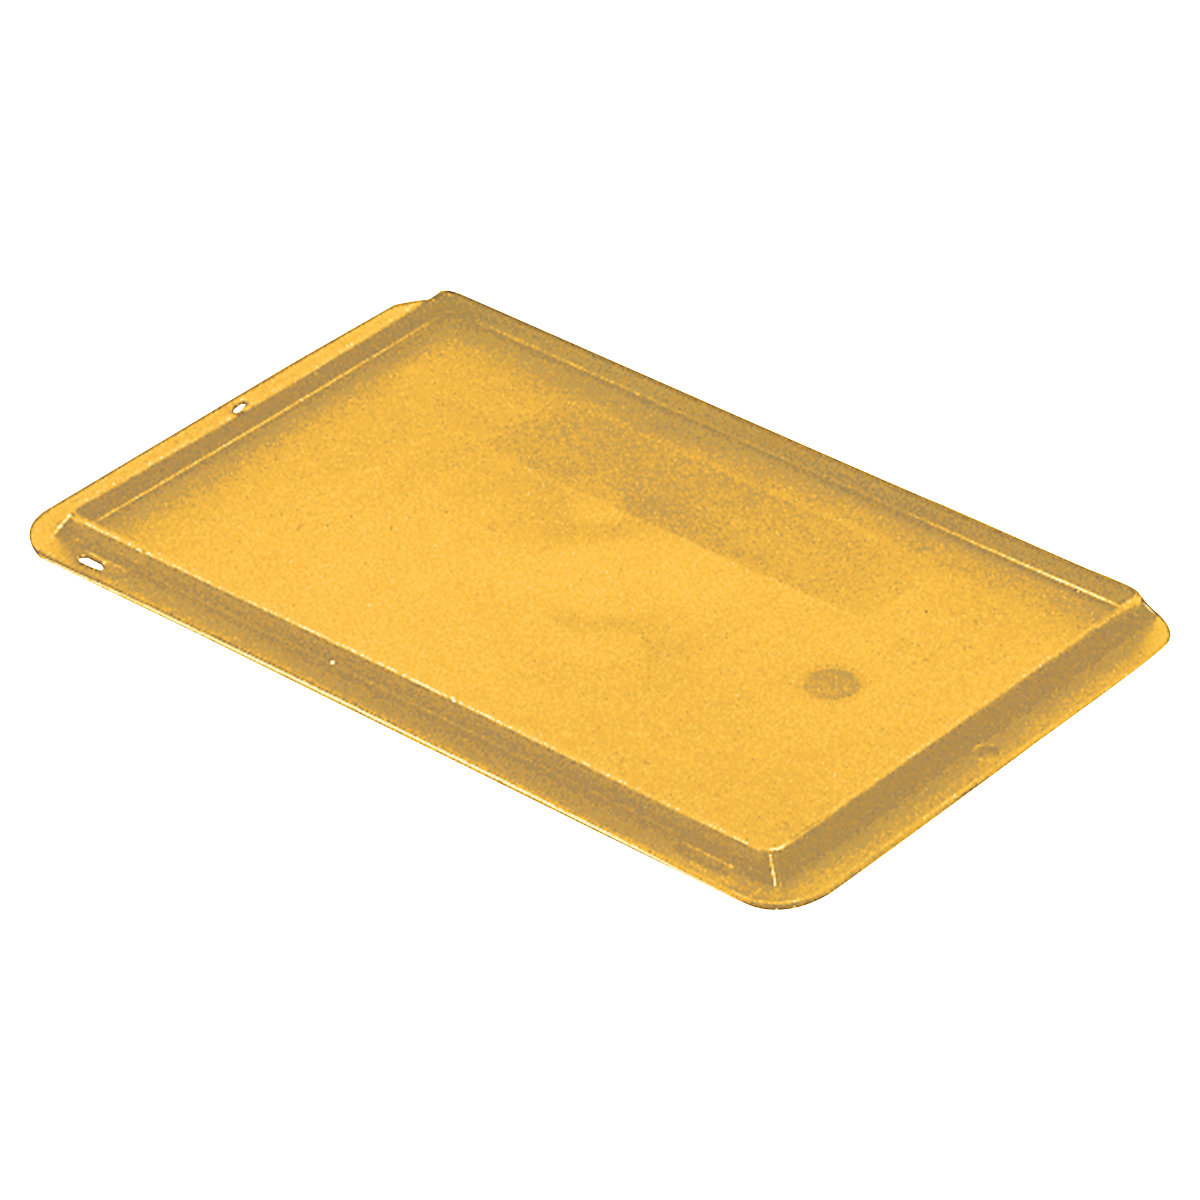 Auflagedeckel für Stapelbehälter, VE 4 Stück, LxB 300 x 200 mm, gelb-3